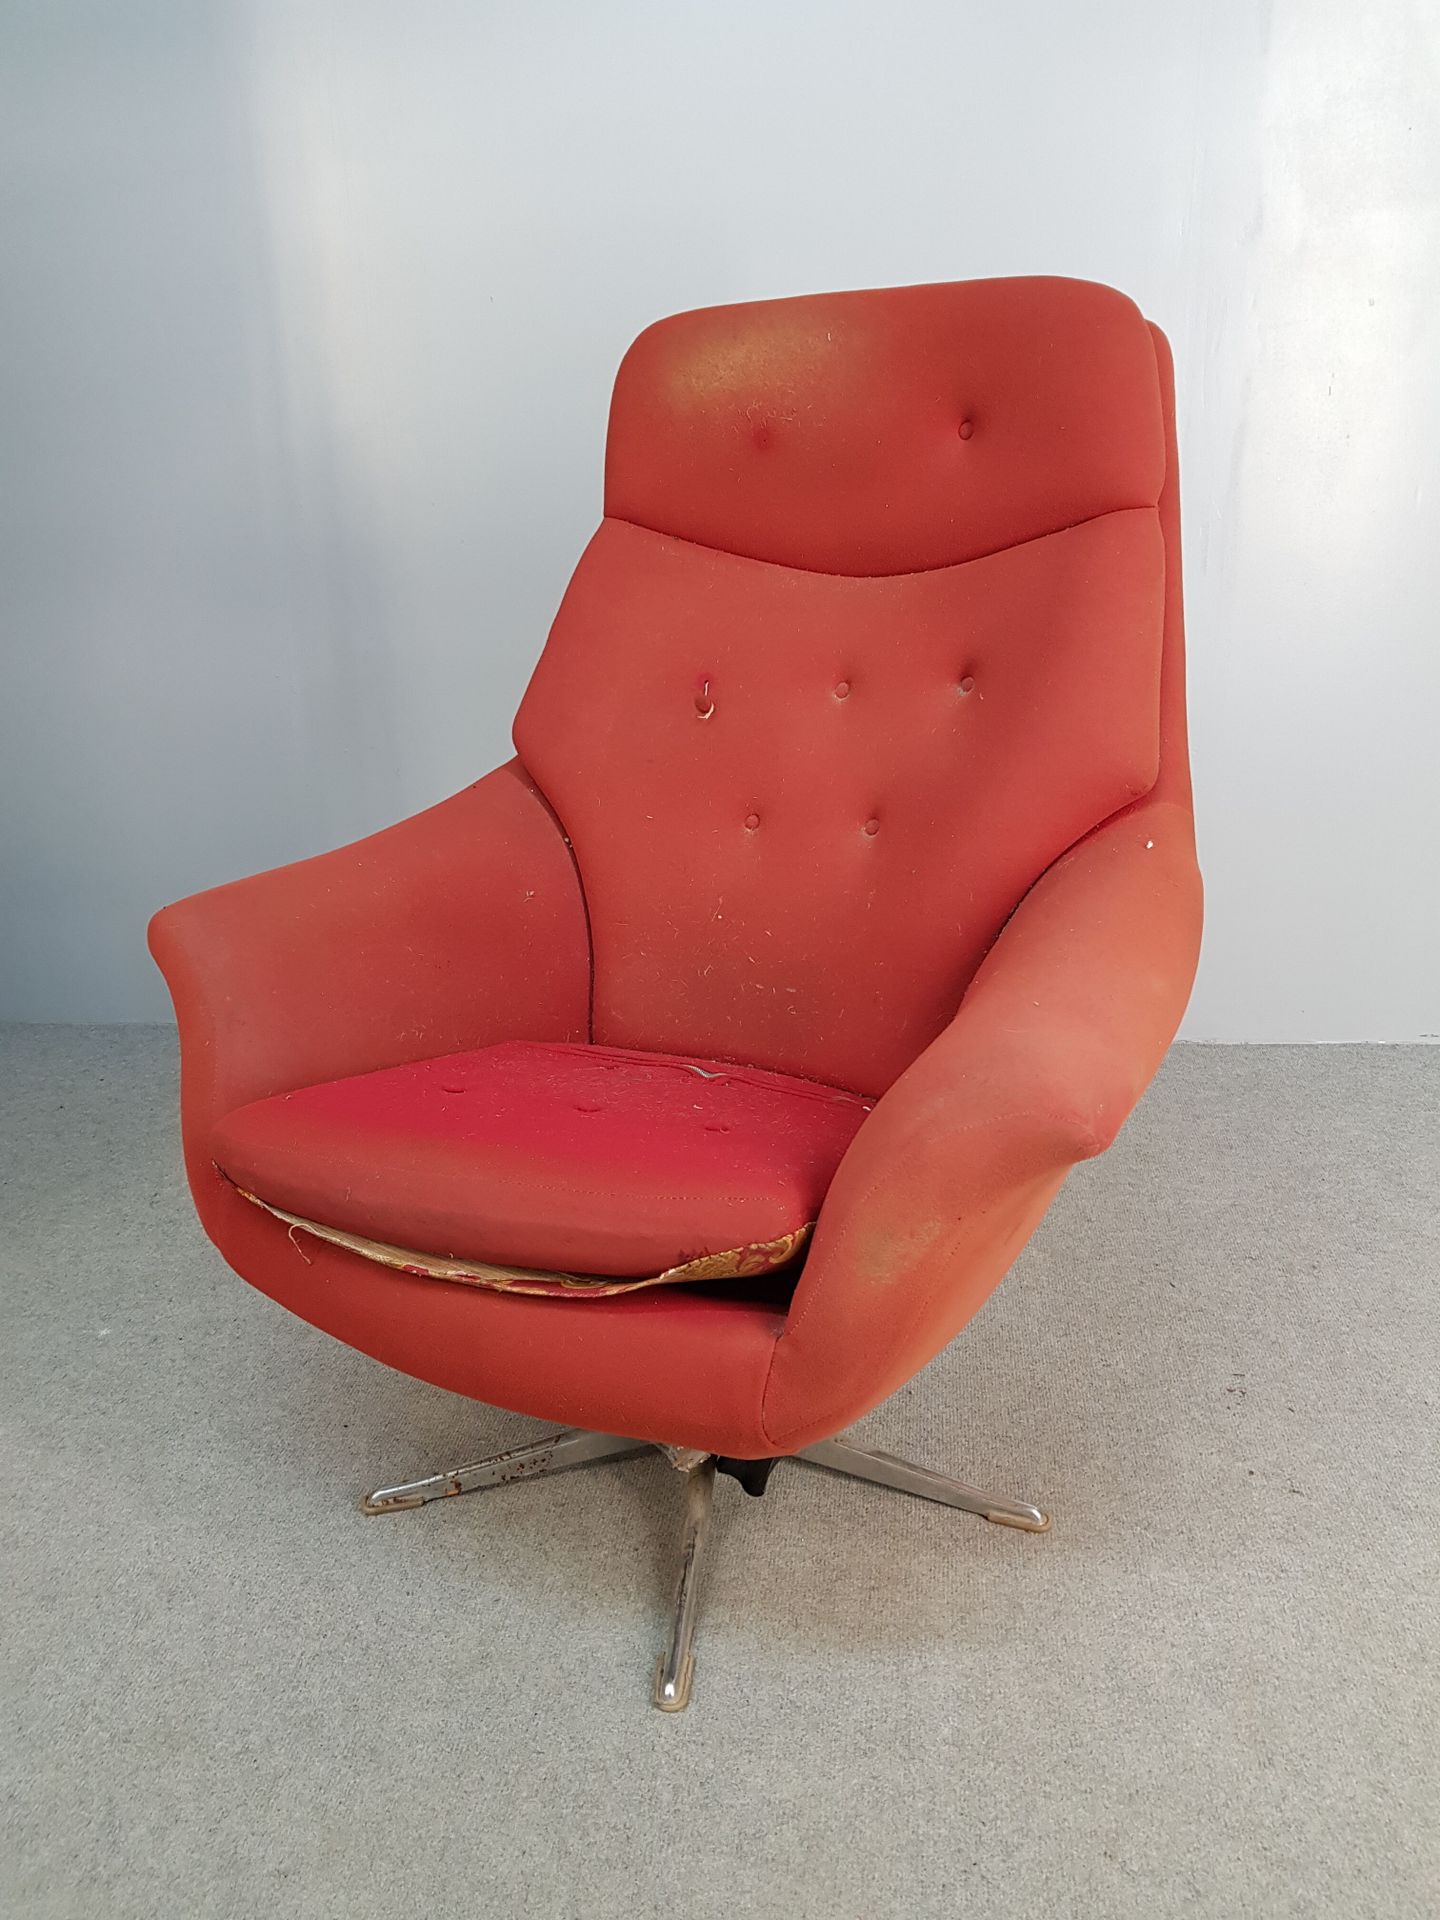 Null 橙红色面料的复古扶手椅，铬合金椅腿。

高104×宽78×深70厘米

将要恢复的